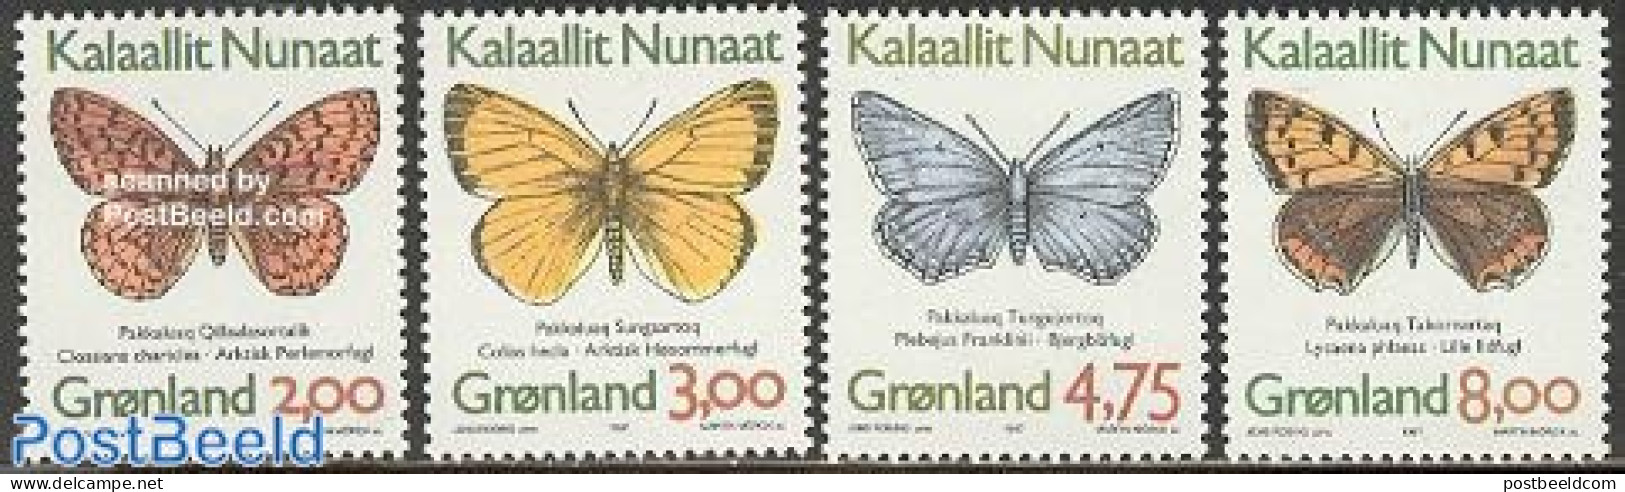 Greenland 1997 Butterflies 4v, Normal Paper (from Booklet), Mint NH, Nature - Butterflies - Ungebraucht